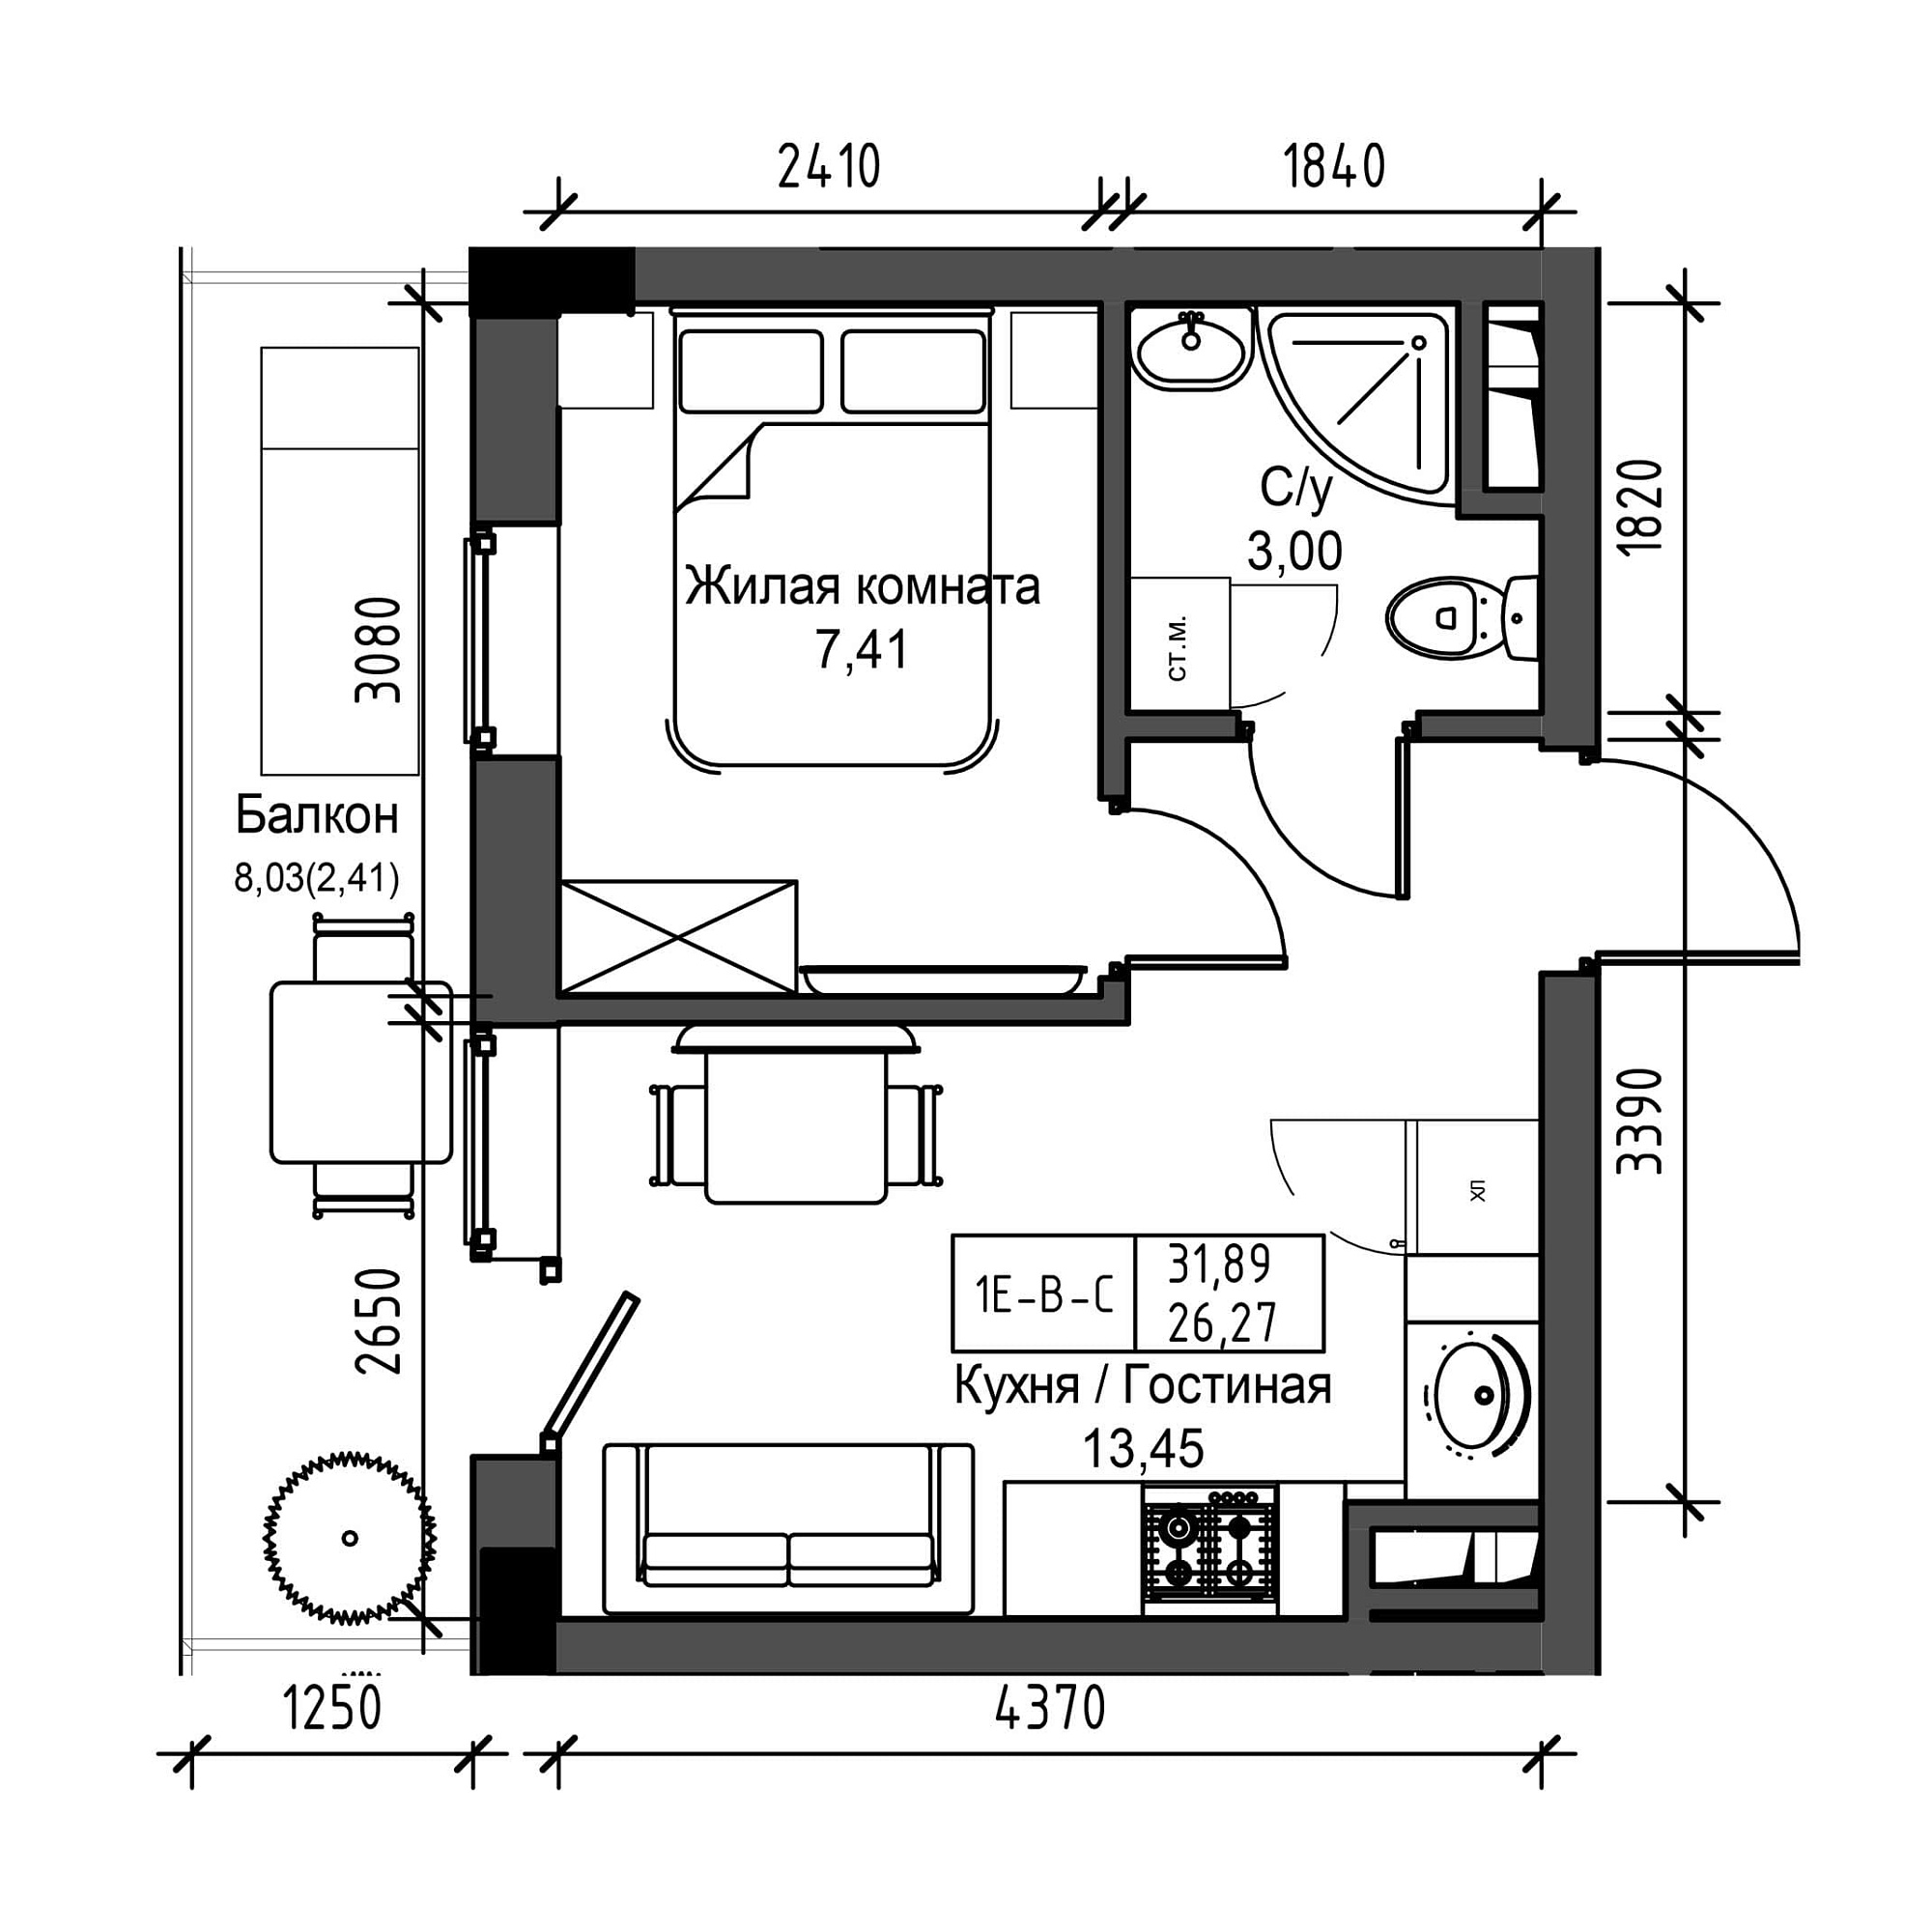 Планировка 1-к квартира площей 26.27м2, UM-001-04/0015.